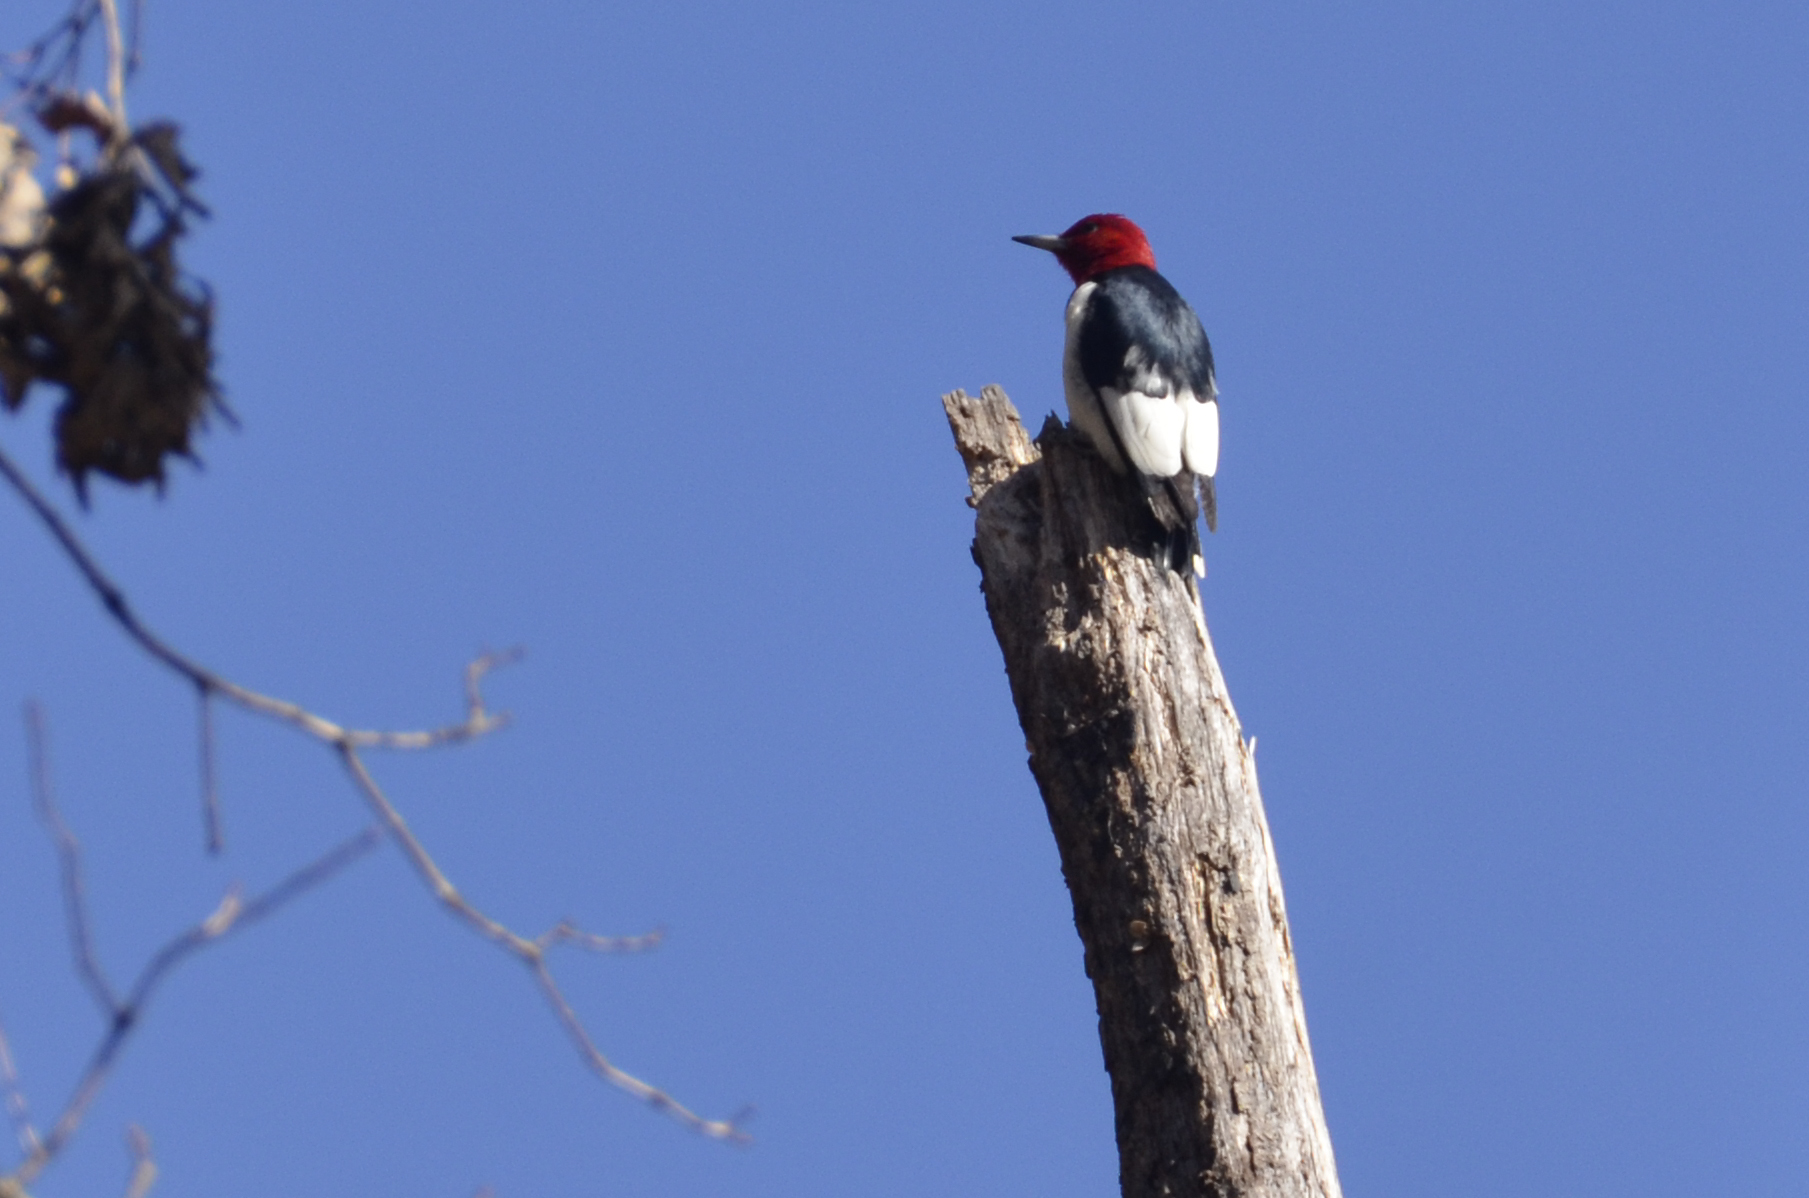 A red-HEADED woodpecker